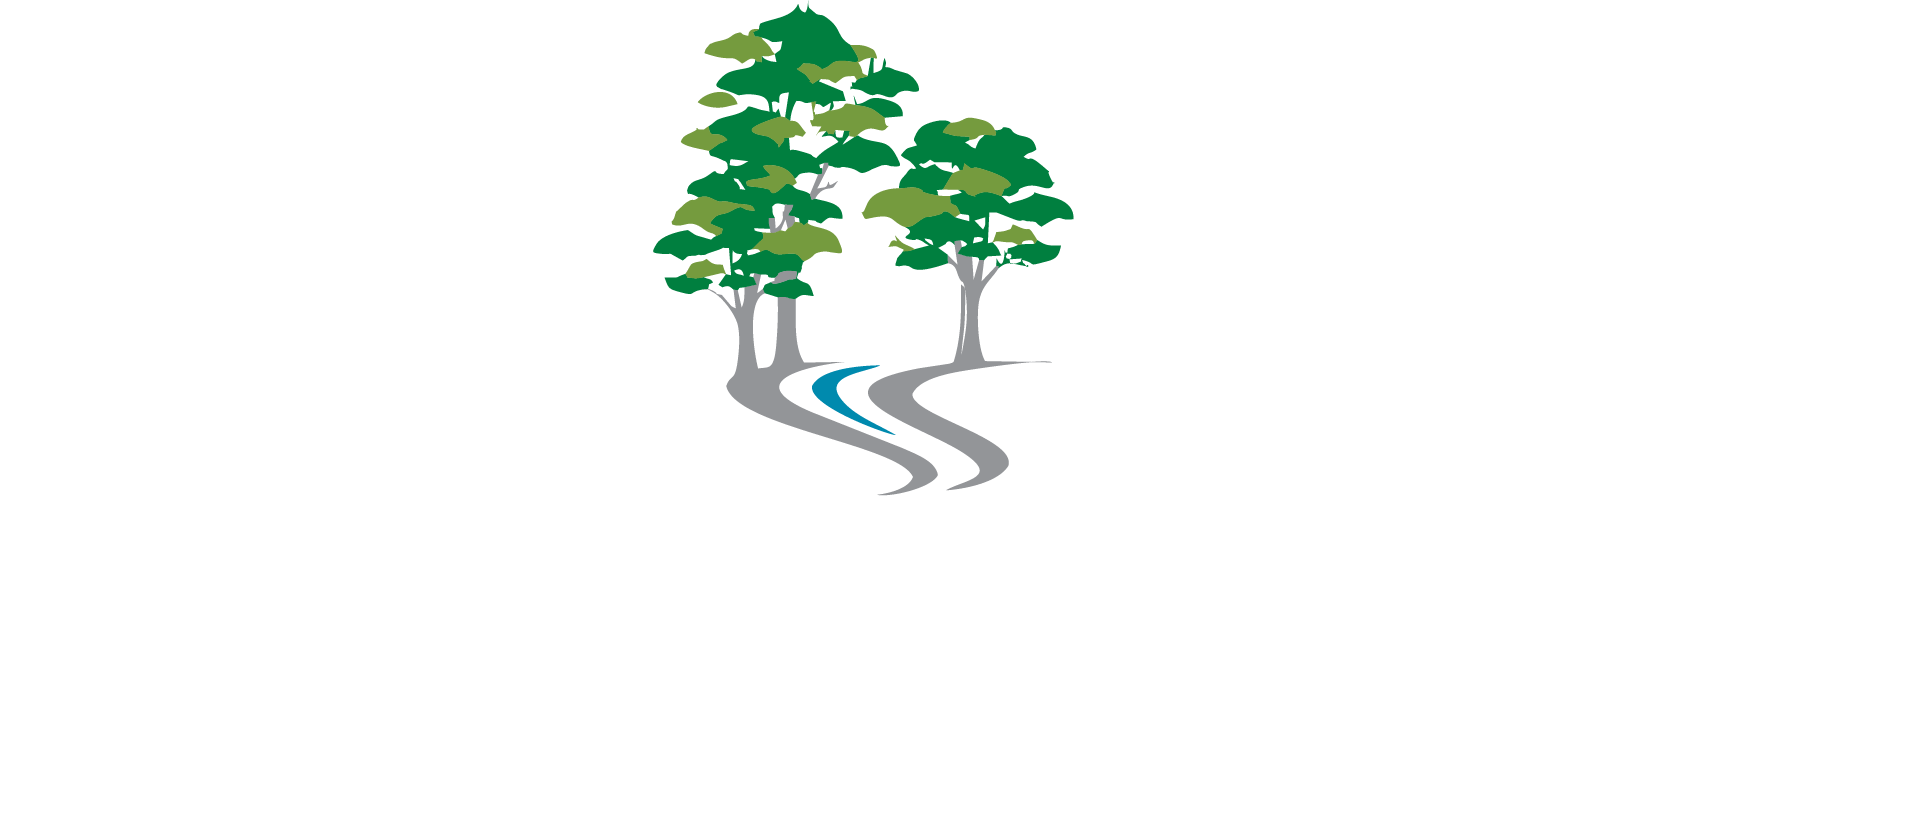 River Crest Golf Course